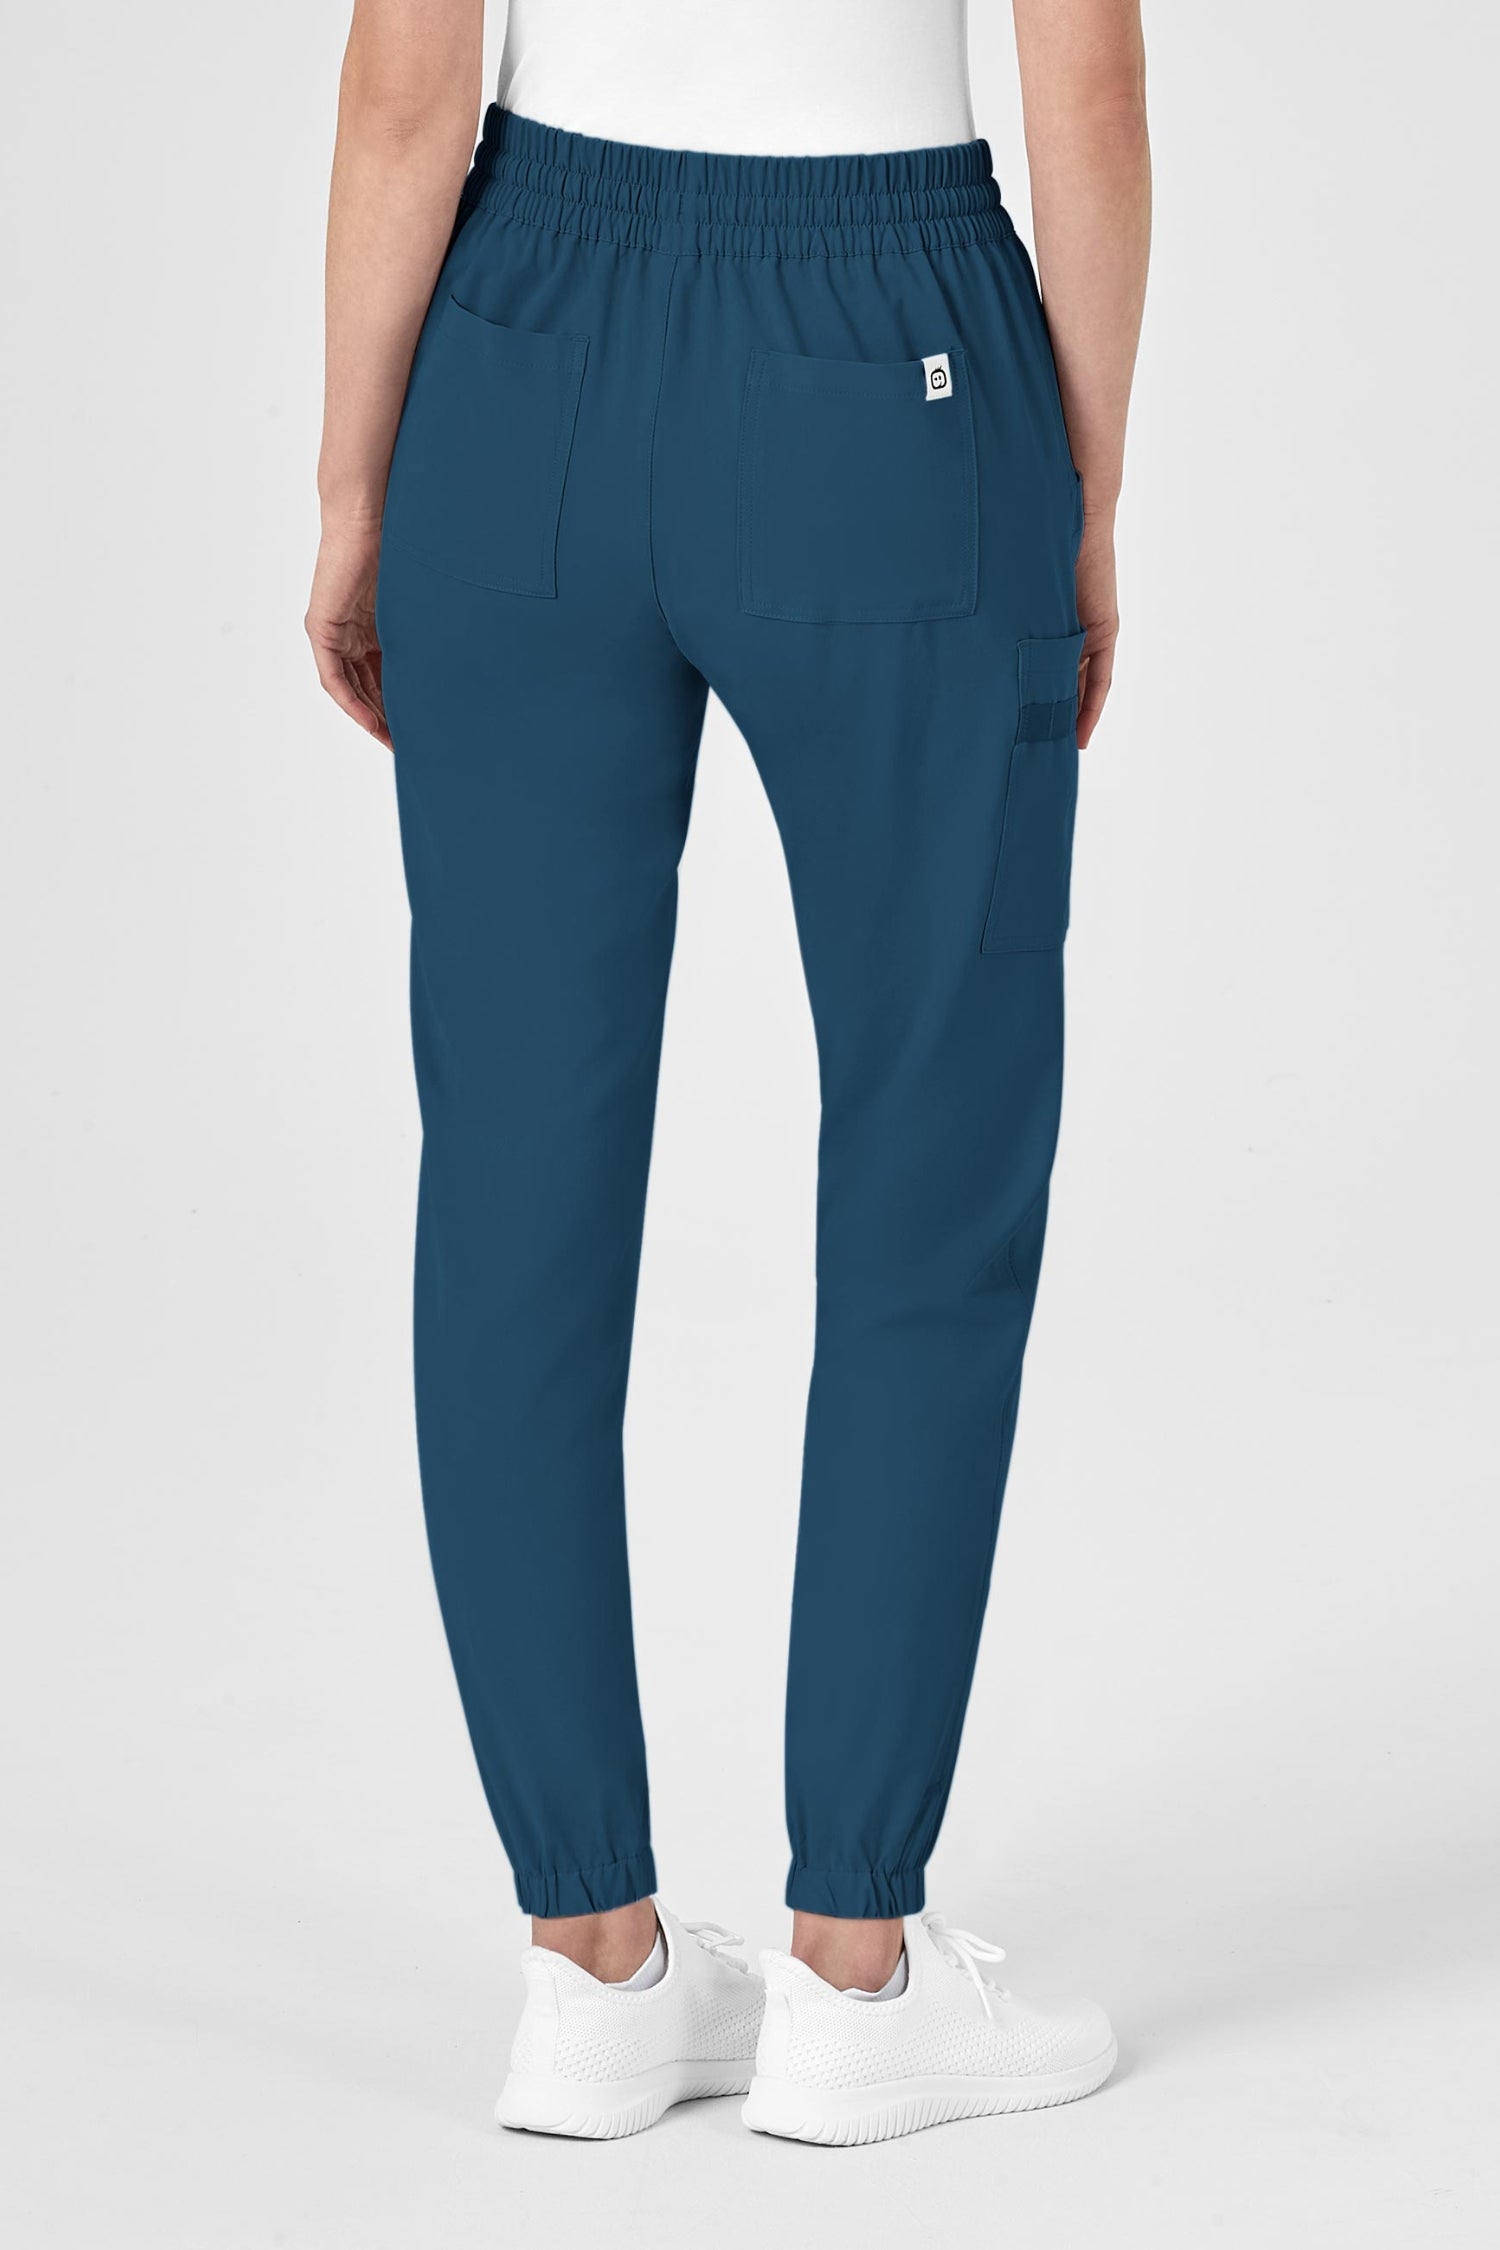 Pantalon médical femme North Face coupe moderne avec poches cargo classiques bleues turquoise